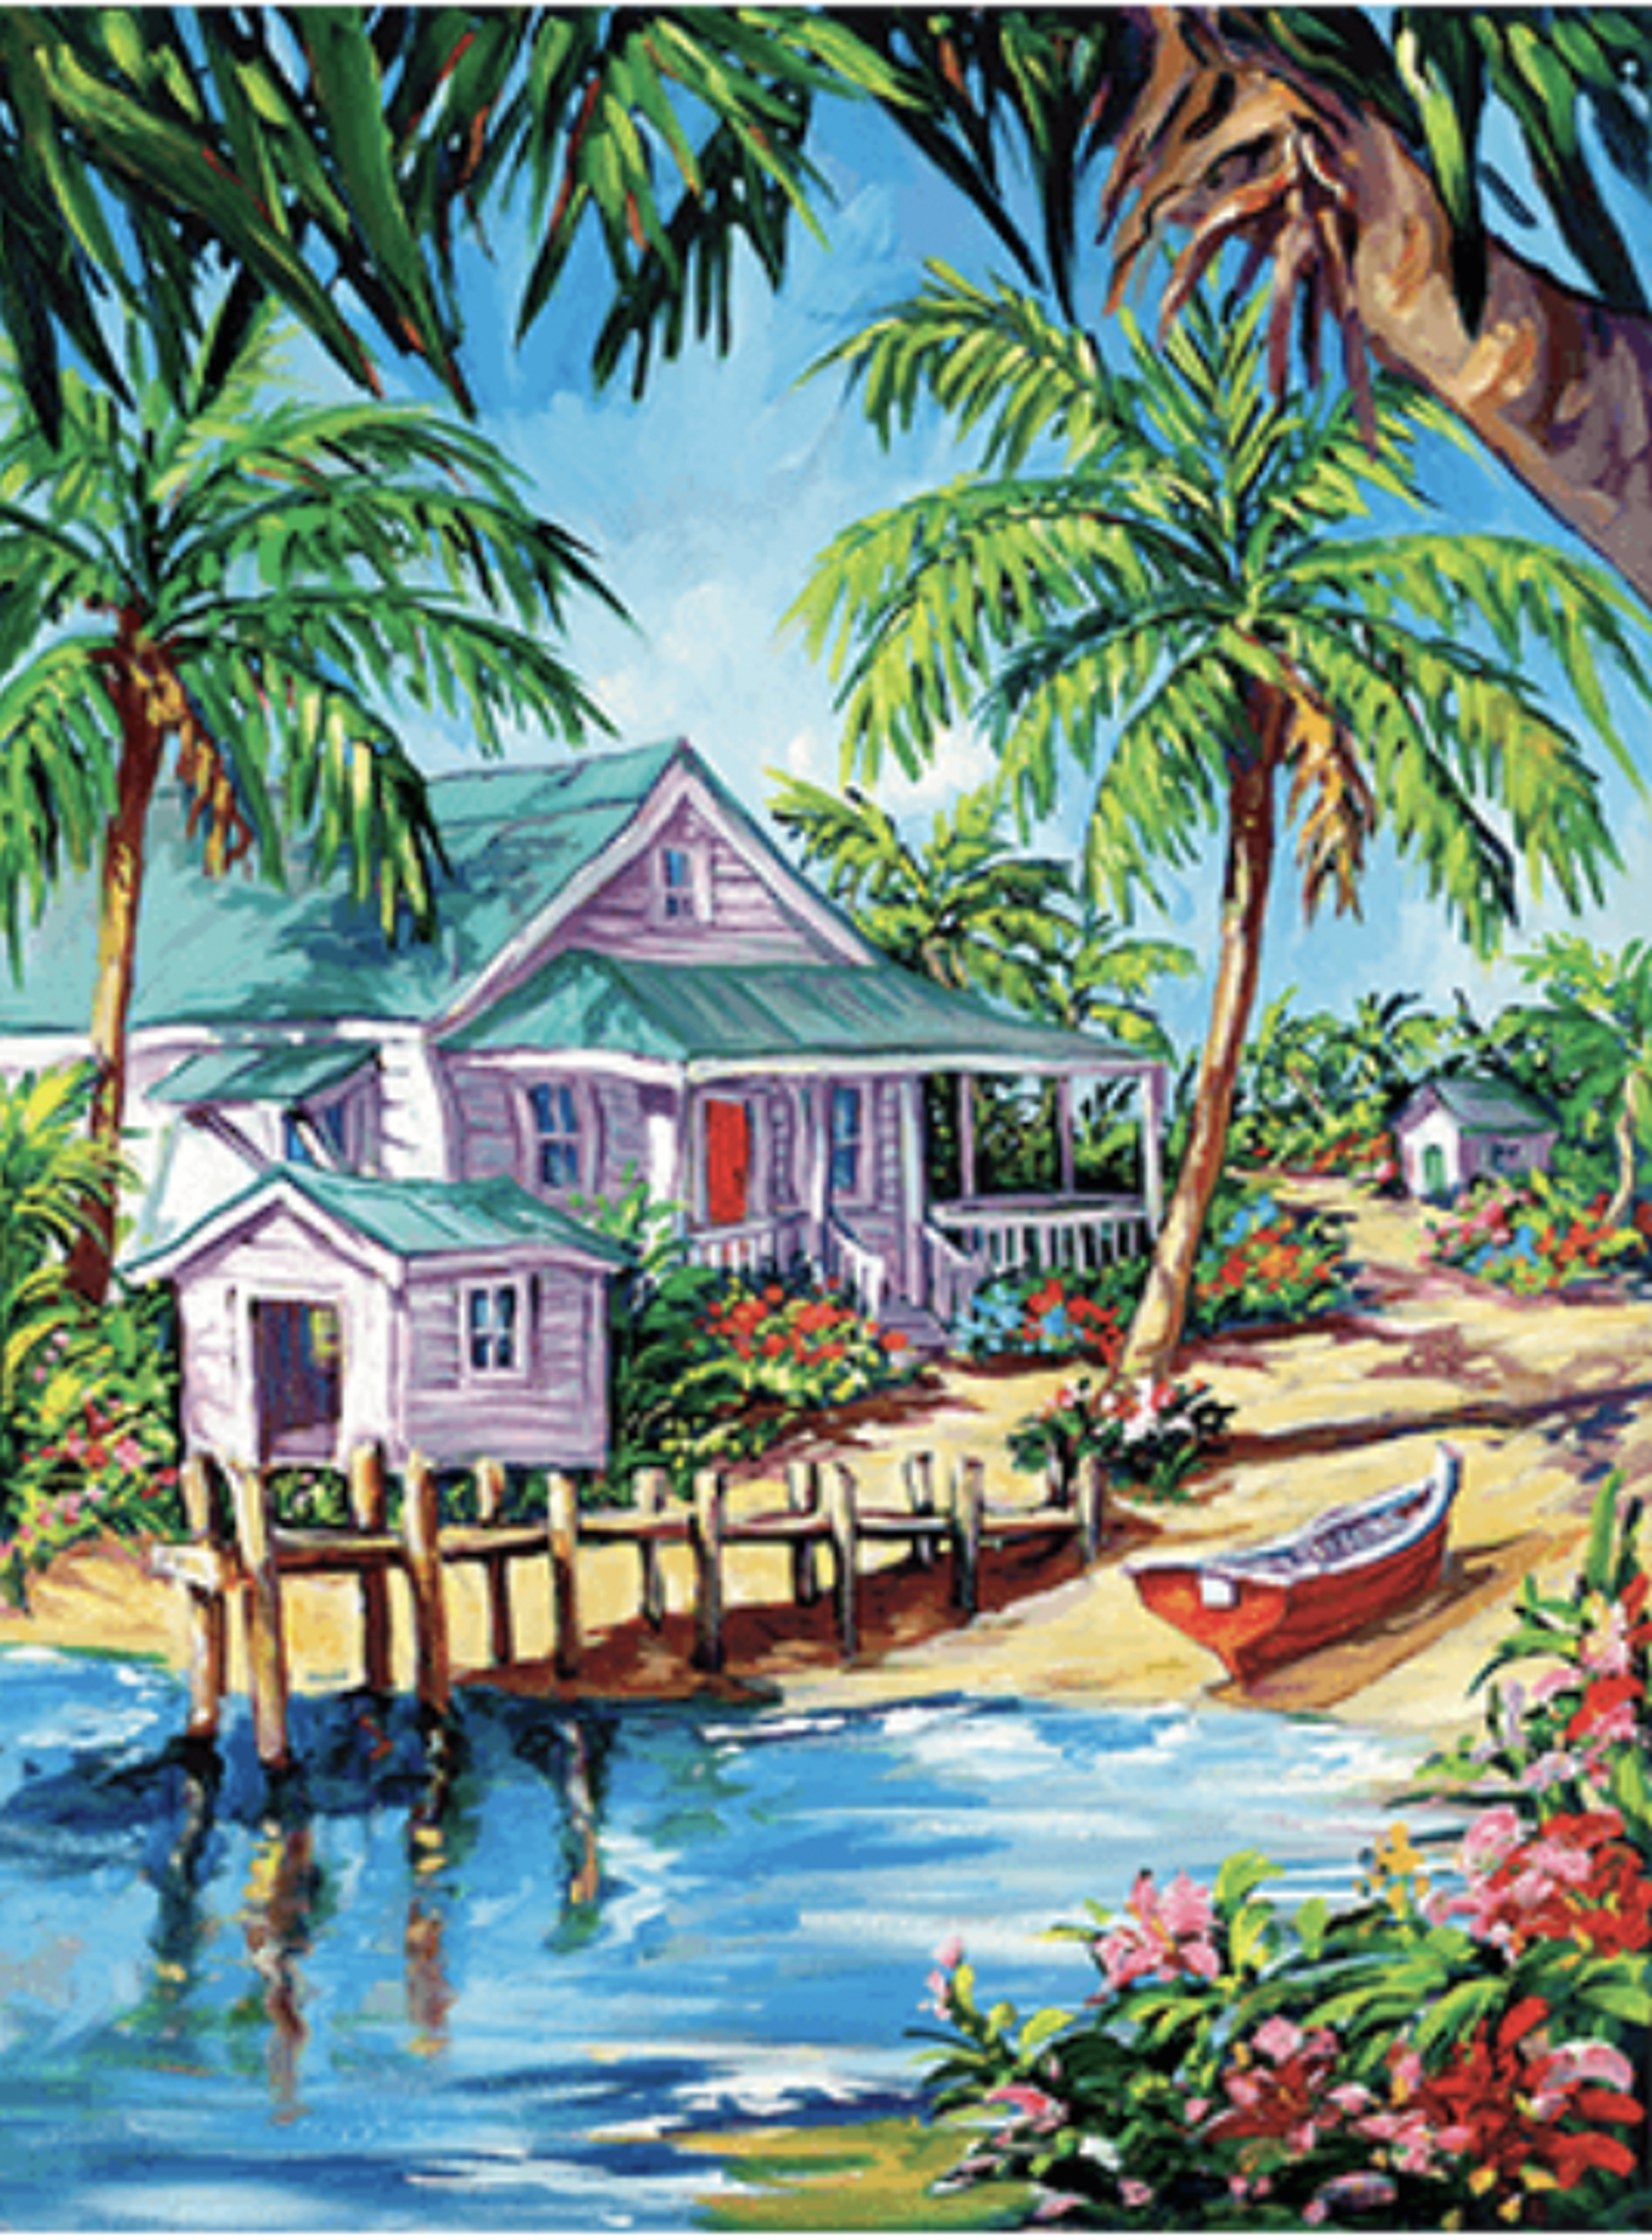 Island Paradise by Steve Barton